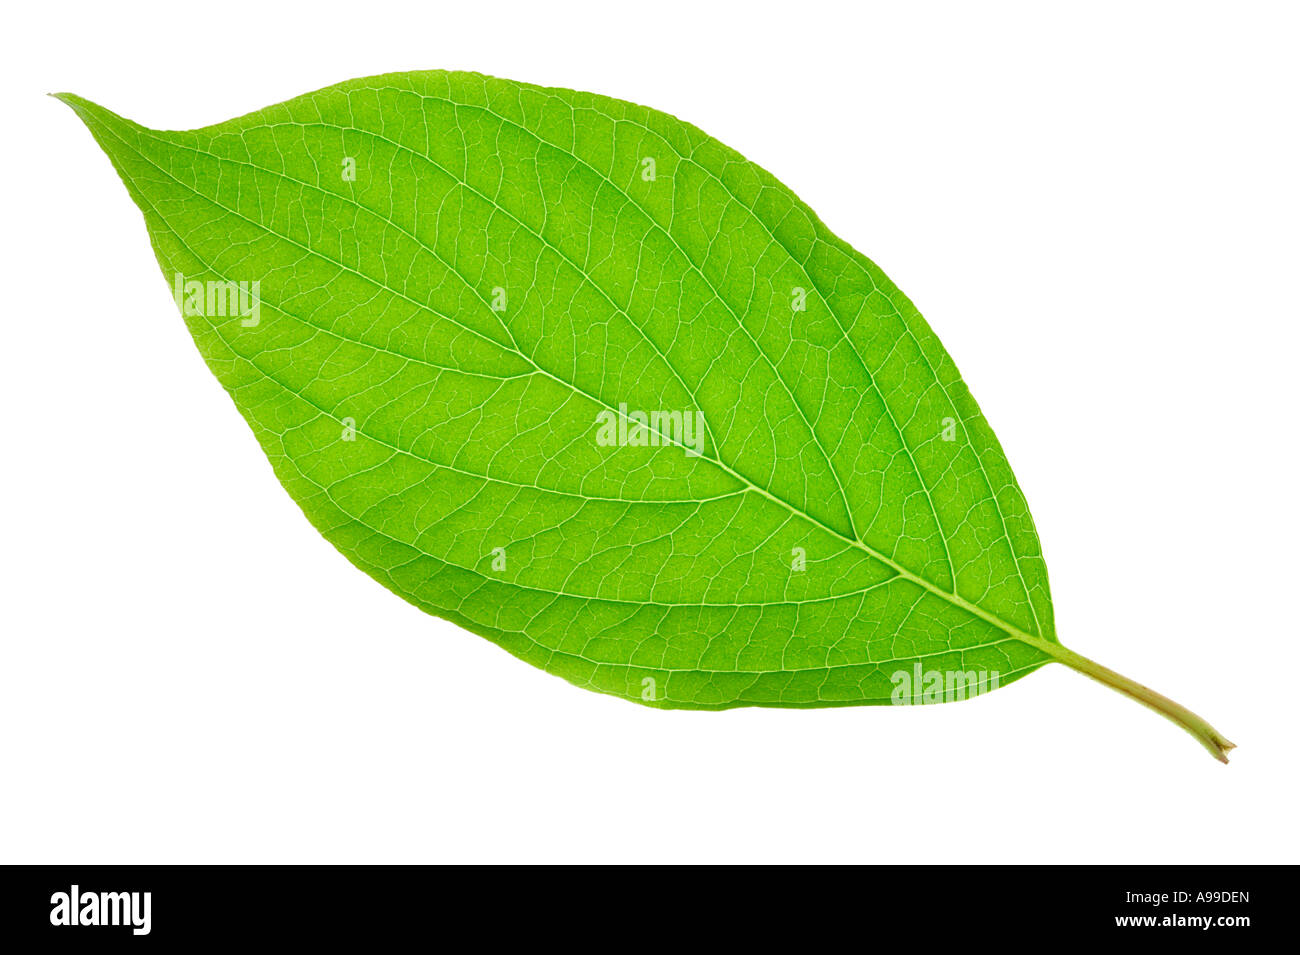 Detaillierten Makroaufnahme von einem grünen Blatt isoliert auf weiss Stockfoto